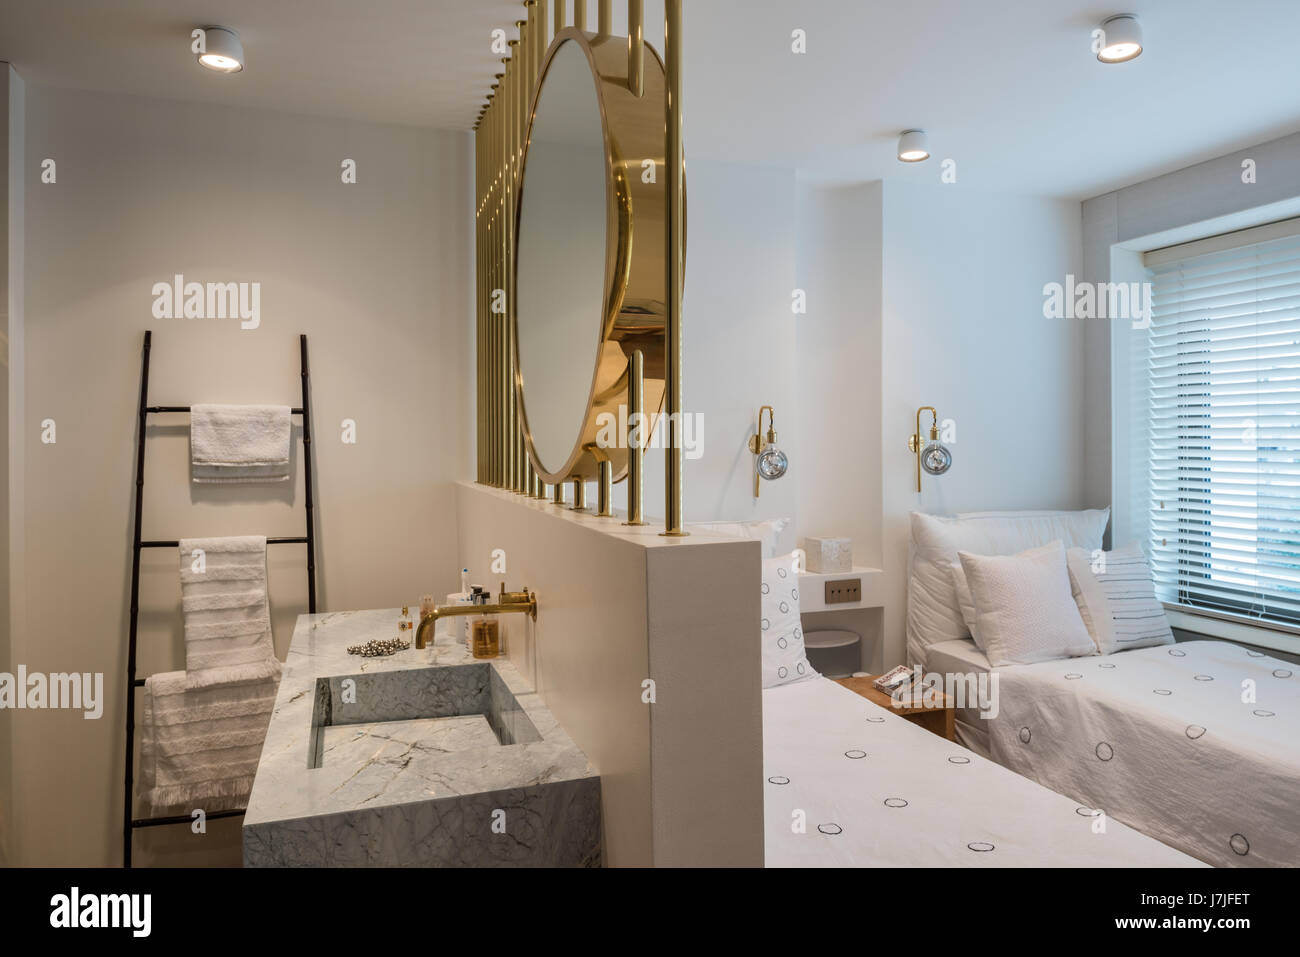 Große Messing-Spiegel über Bad Waschtisch im Schlafzimmer mit zwei Einzelbetten Stockfoto